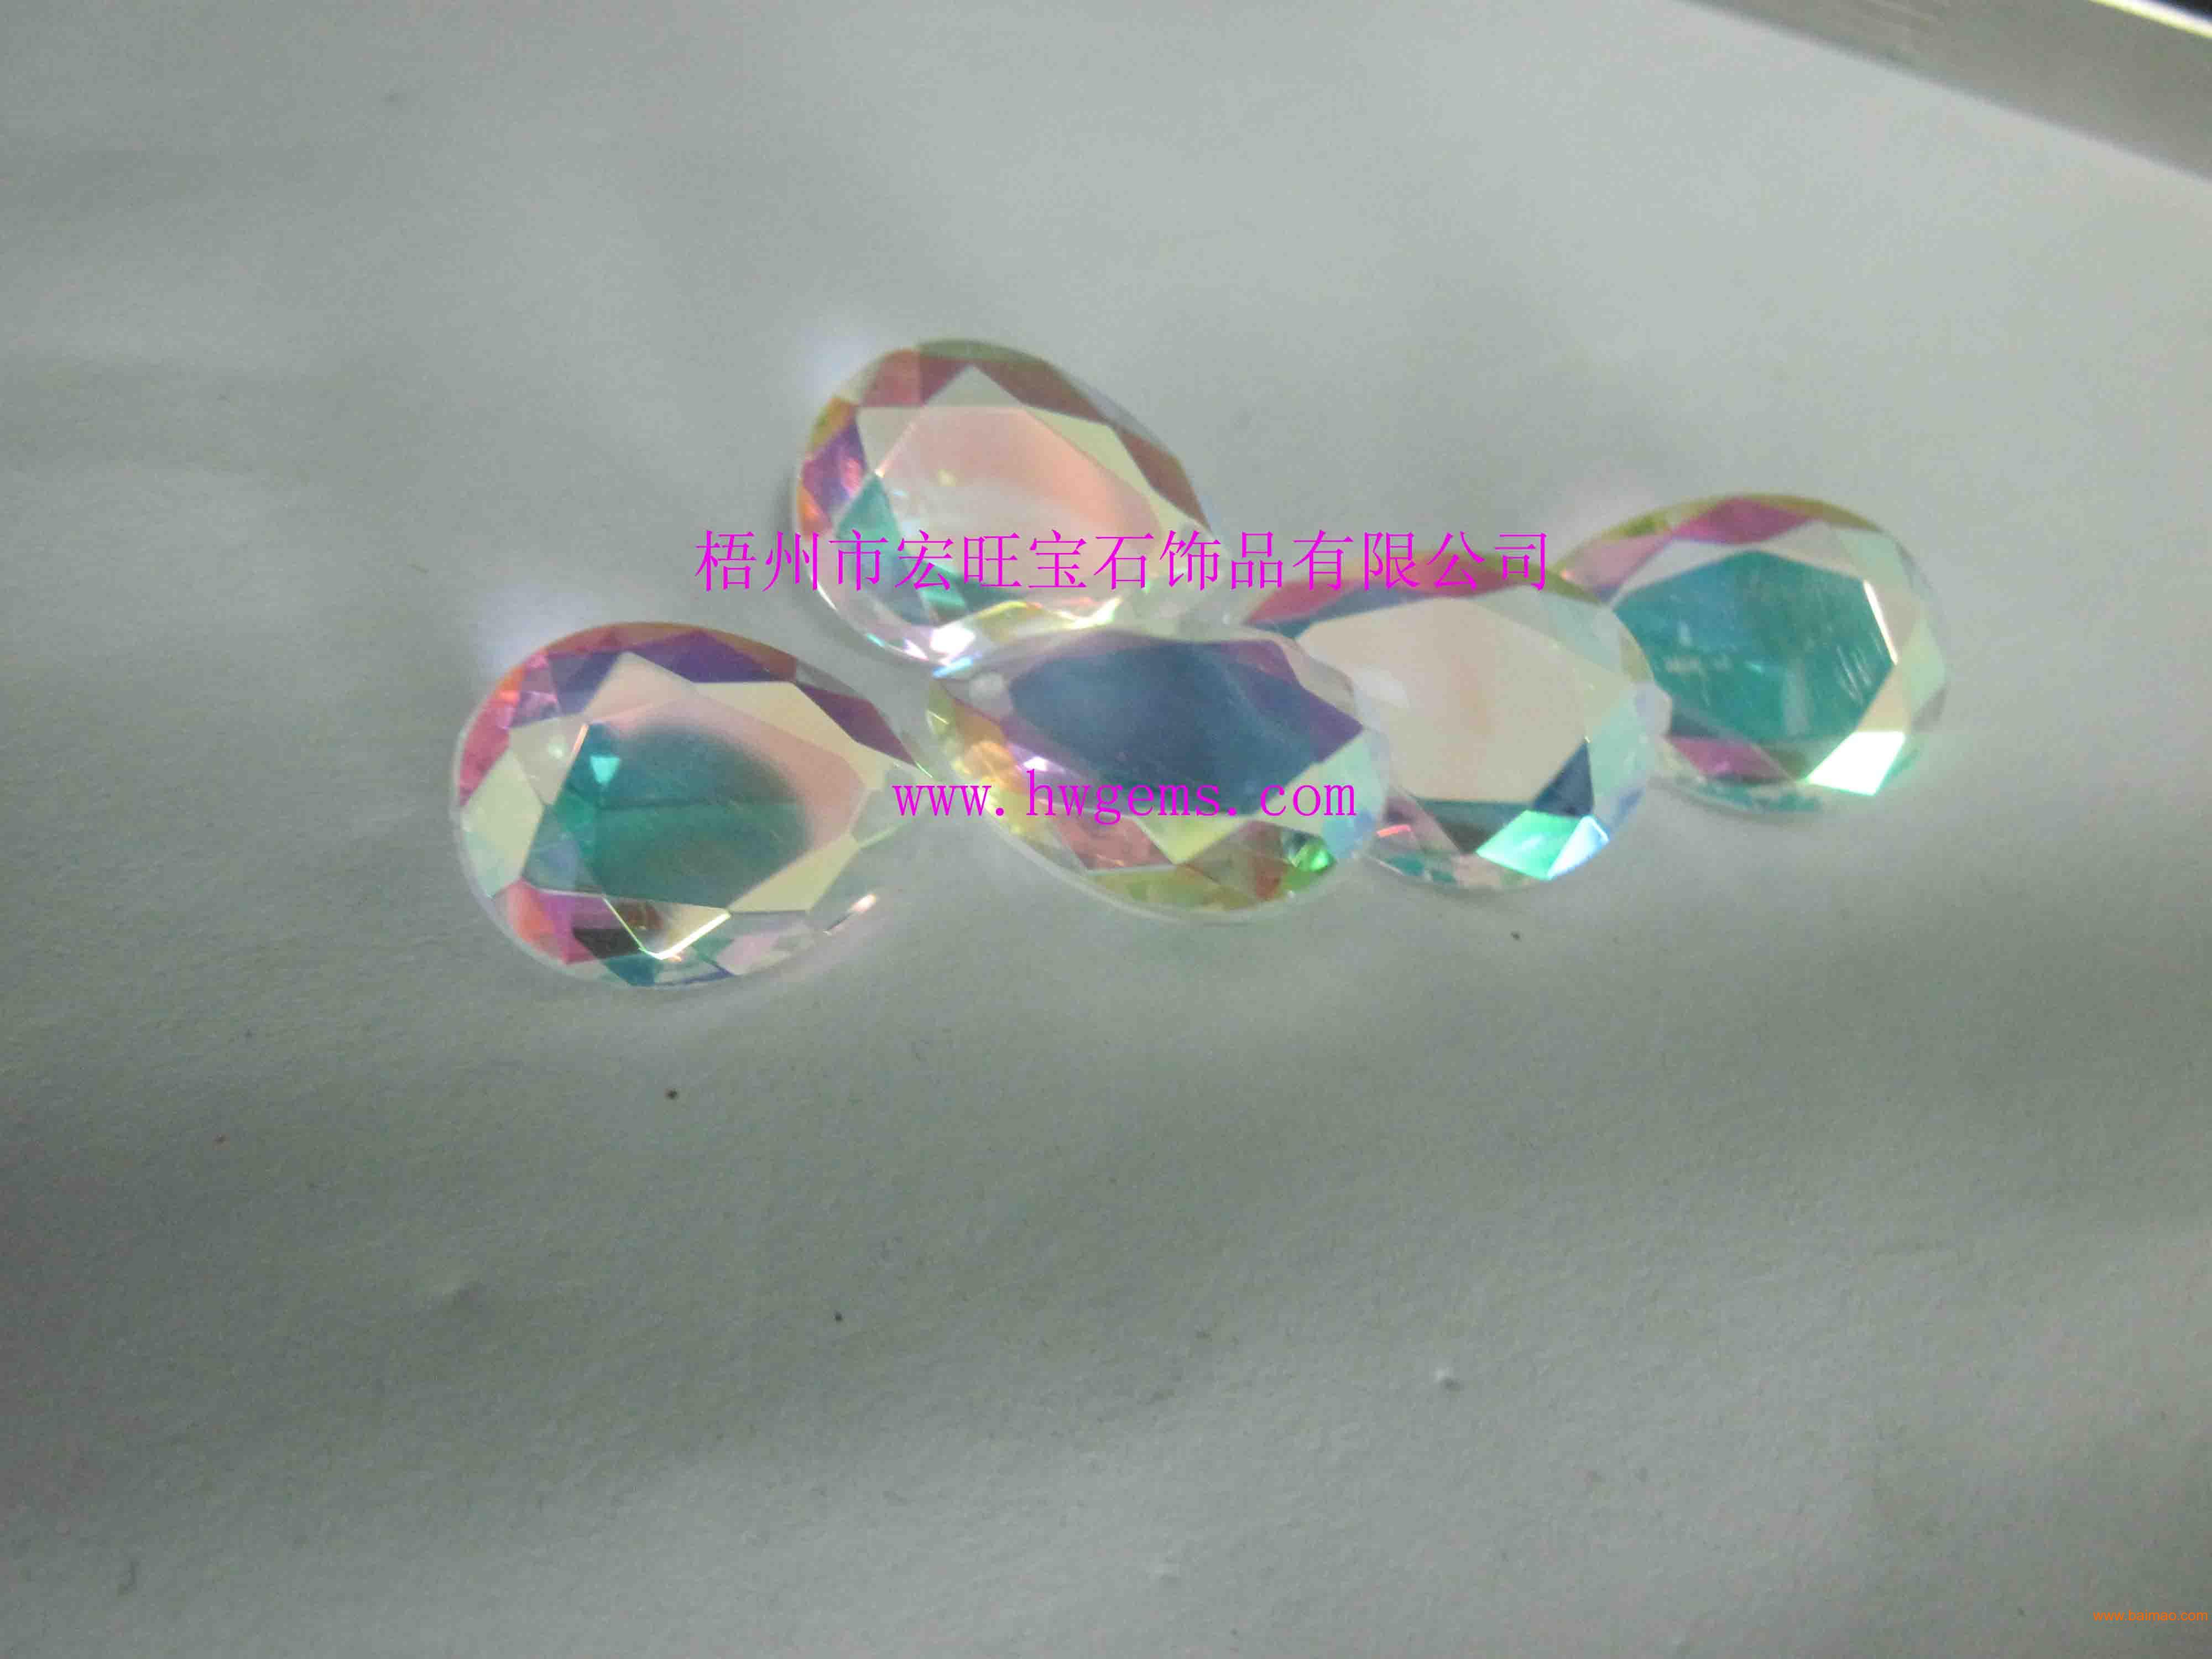 水晶玻璃宝石  梨形电镀七彩  人工宝石